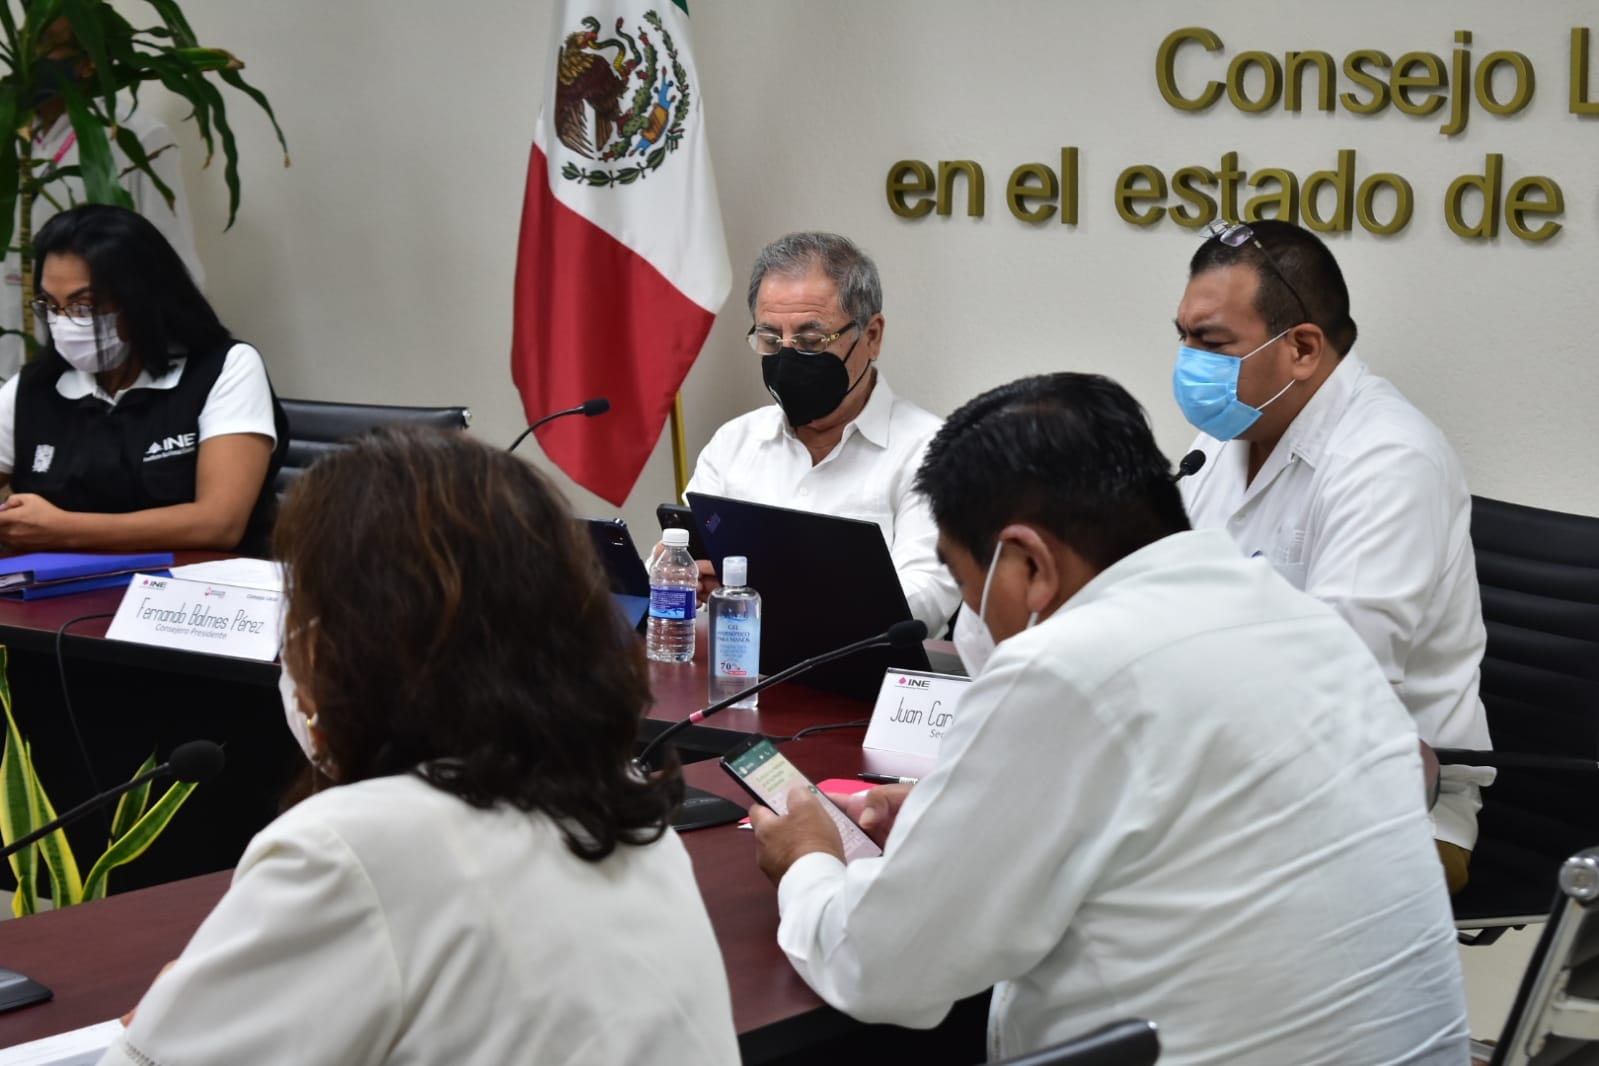 Revocación de Mandato: Primeros registros indican 95% de votos a favor de AMLO en Campeche